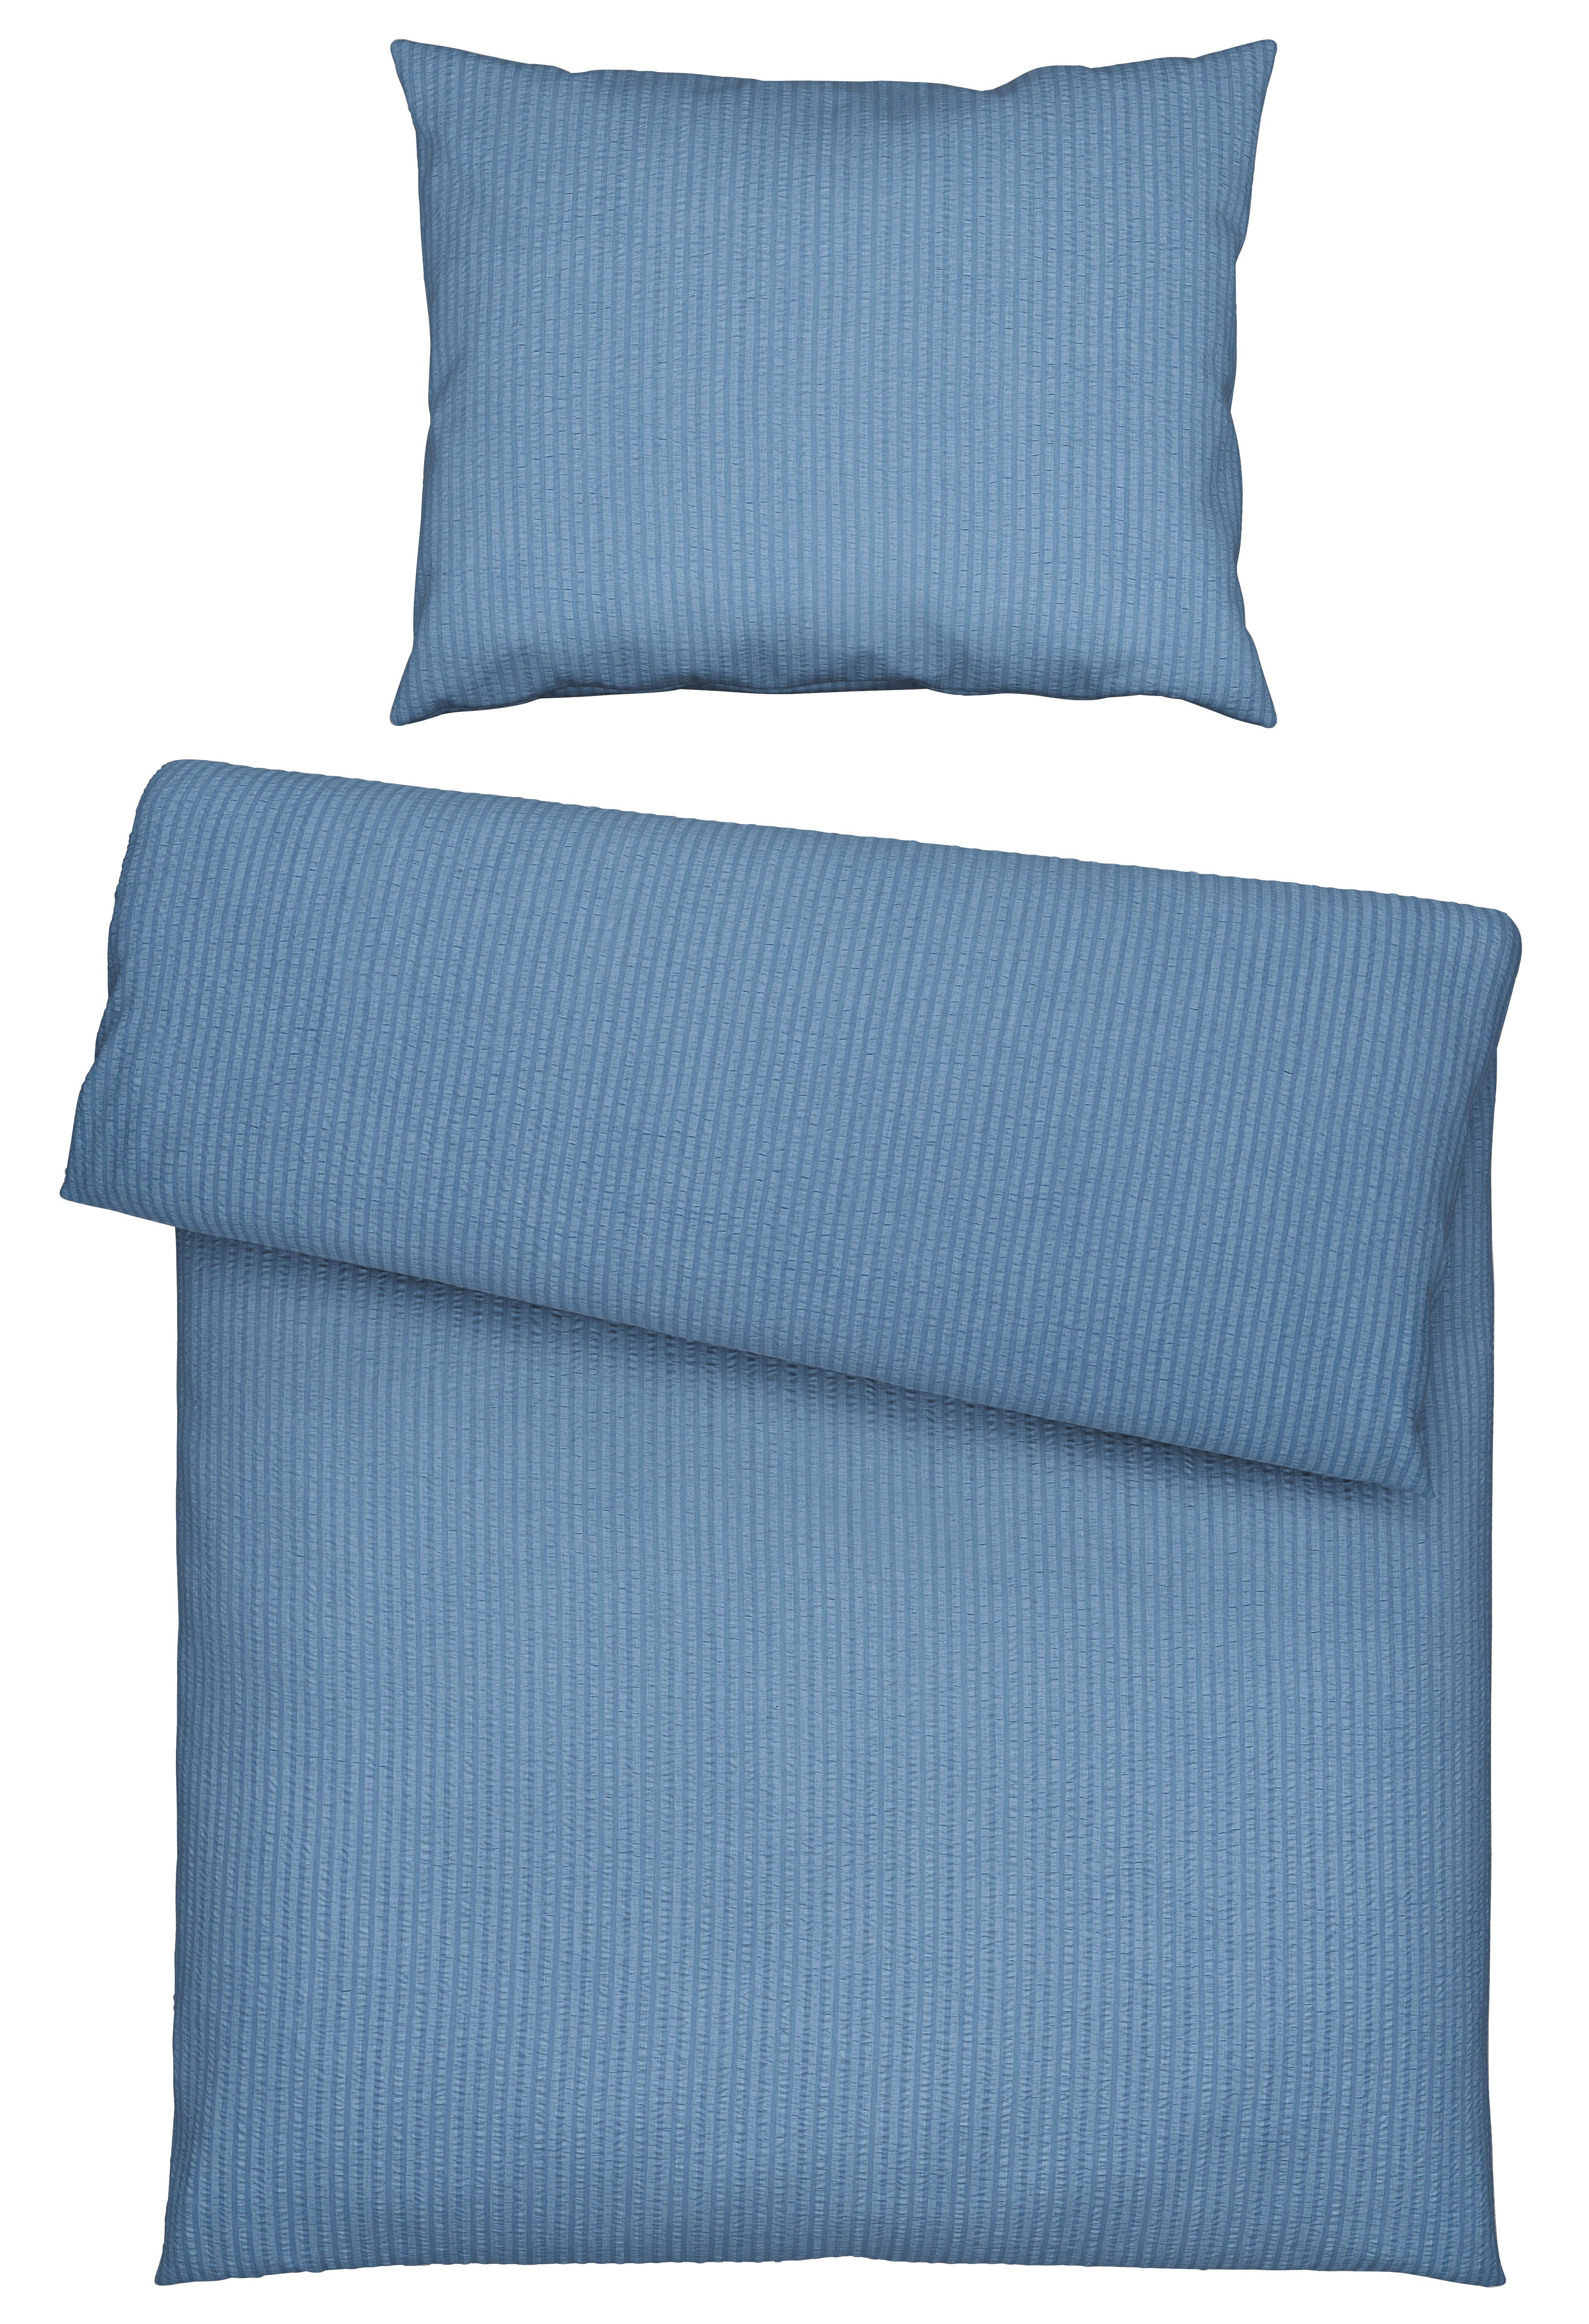 Posteľná Bielizeň Babs, 140/200cm, Modrá - modrá, Moderný, textil (140/200cm) - Modern Living